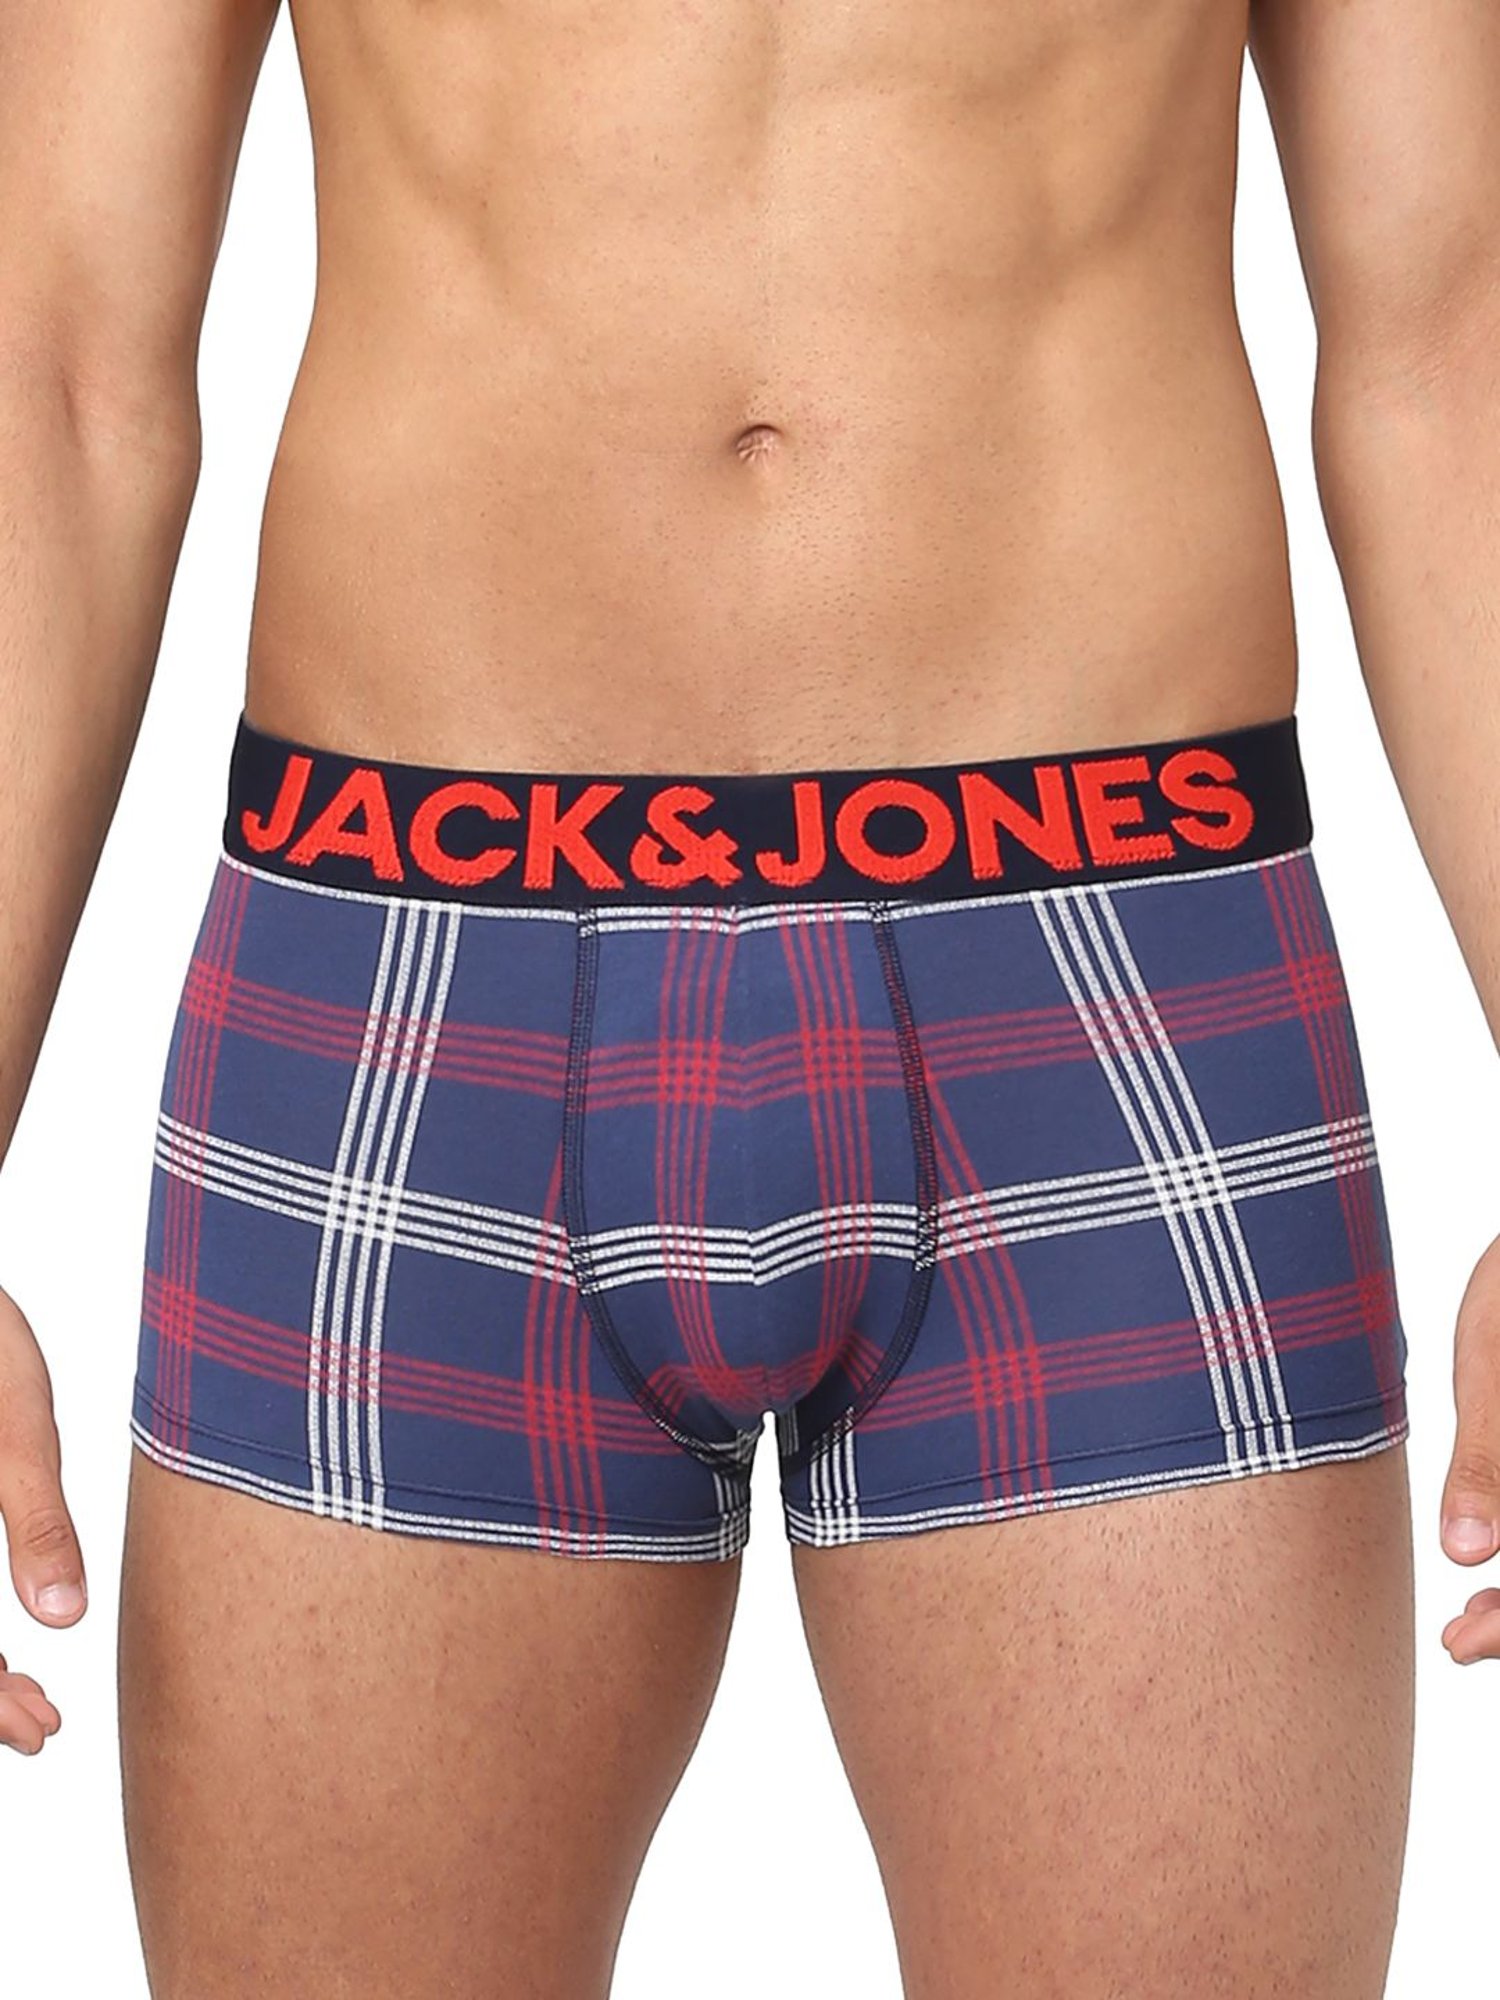 Buy Jack & Jones Medieval Blue Checks Trunks for Men Online @ Tata